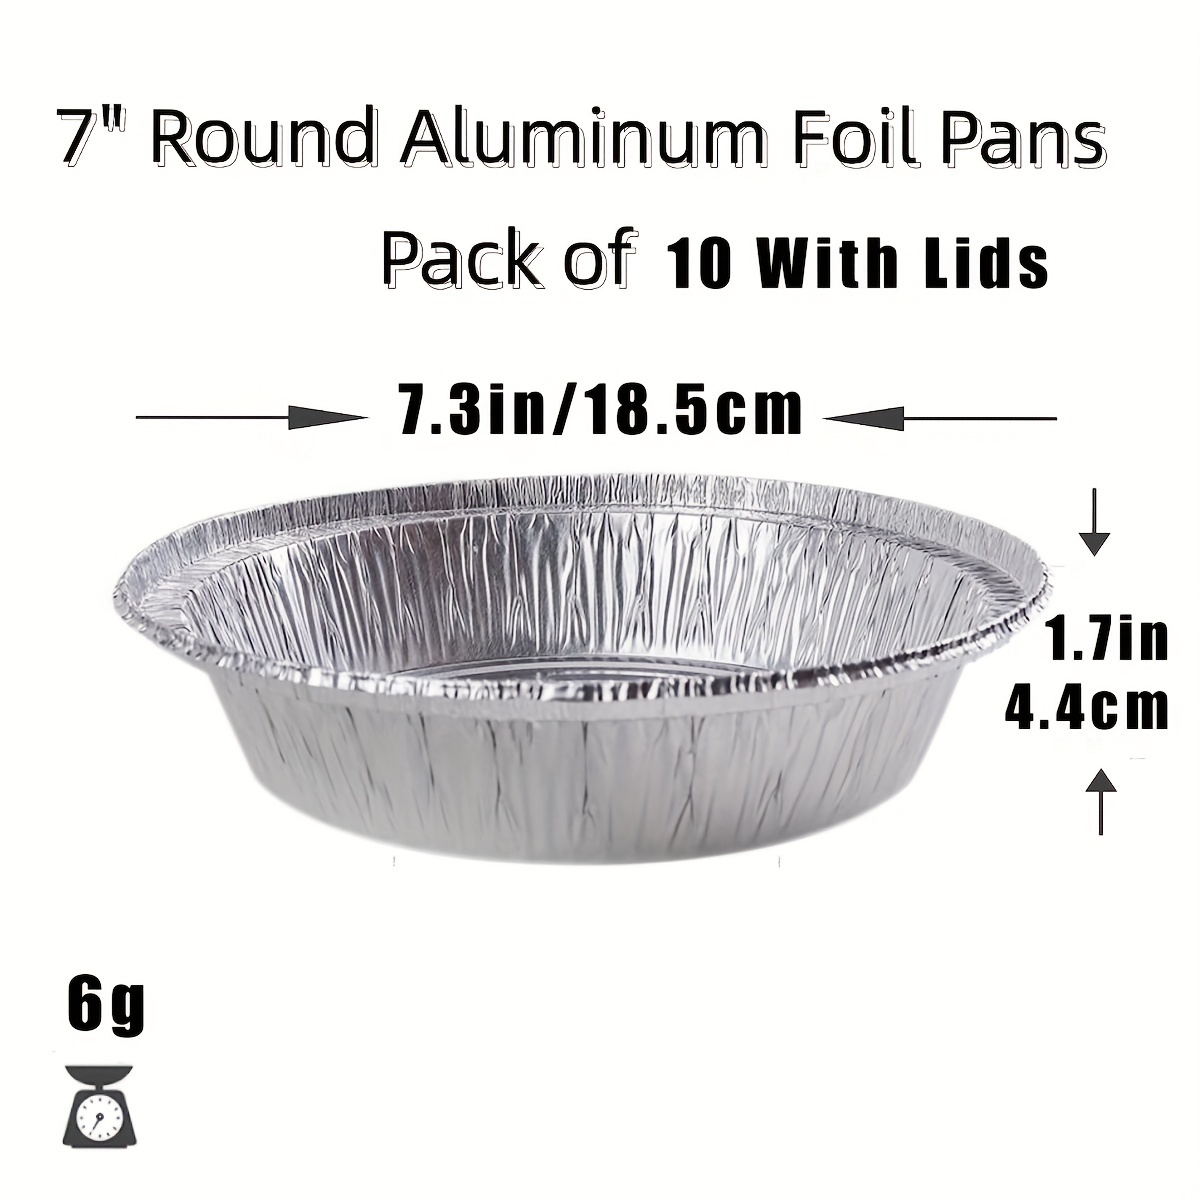 Aluminum Foil Containers - 7 Round